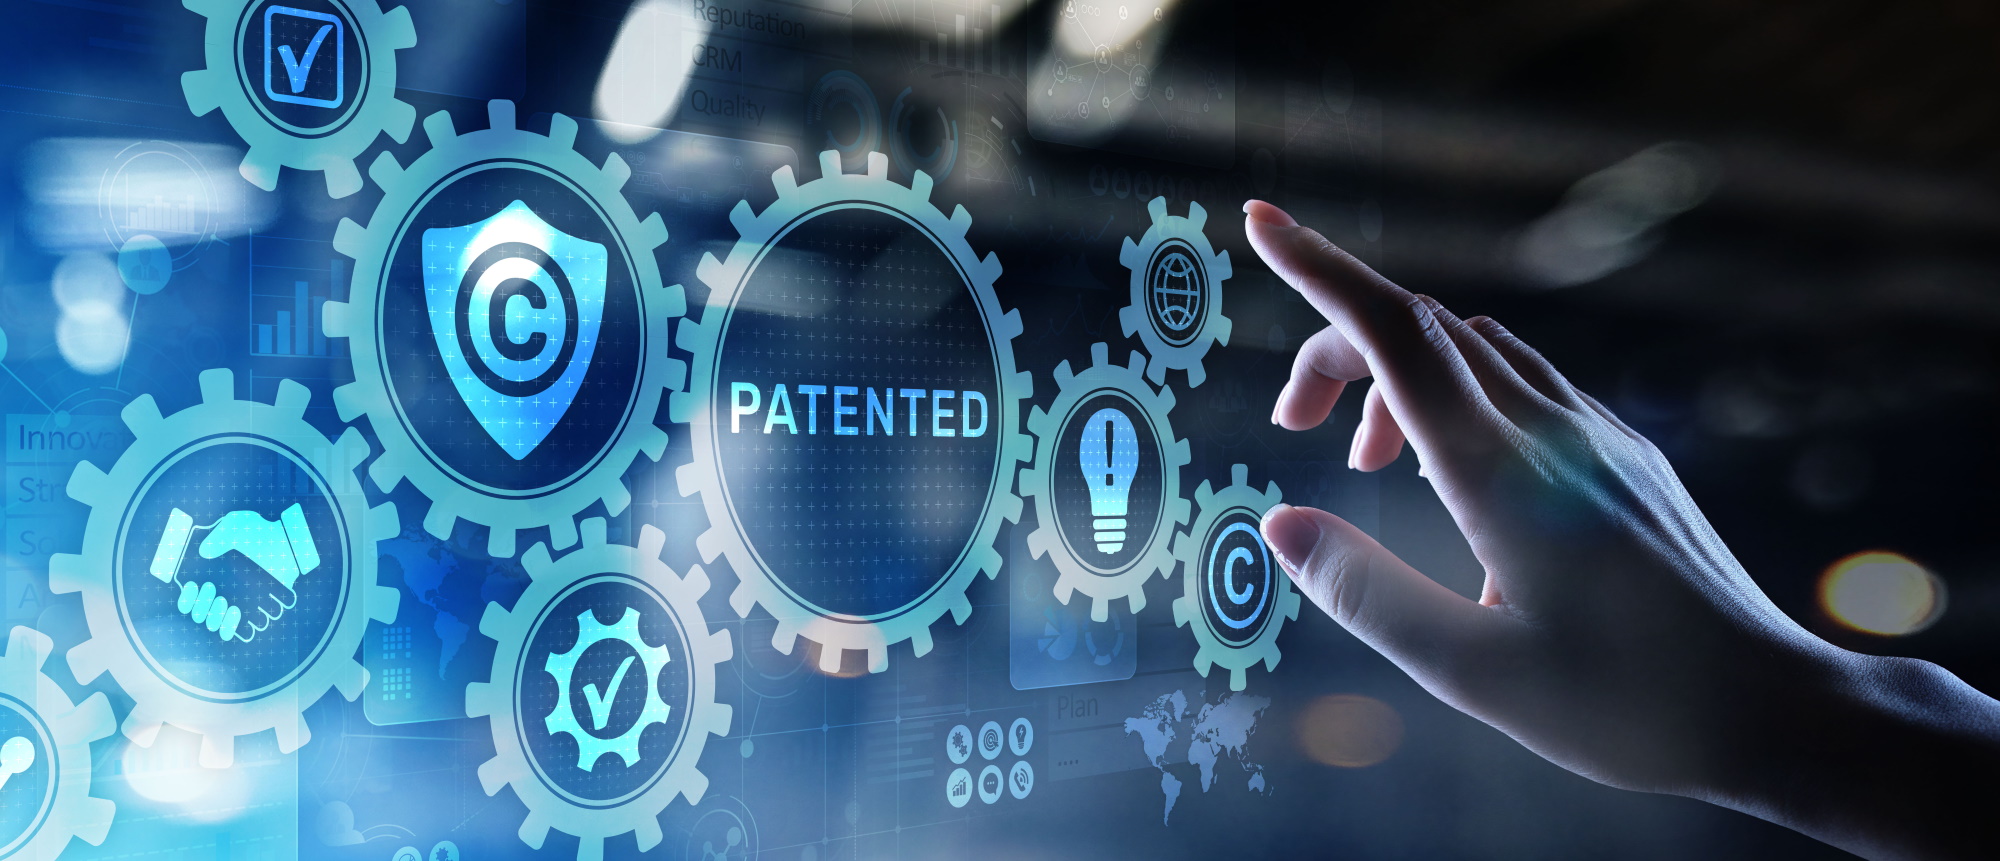 ITAINNOVA organiza la jornada ¿Cómo puedo proteger mis innovaciones? Patentes, diseños y marcas